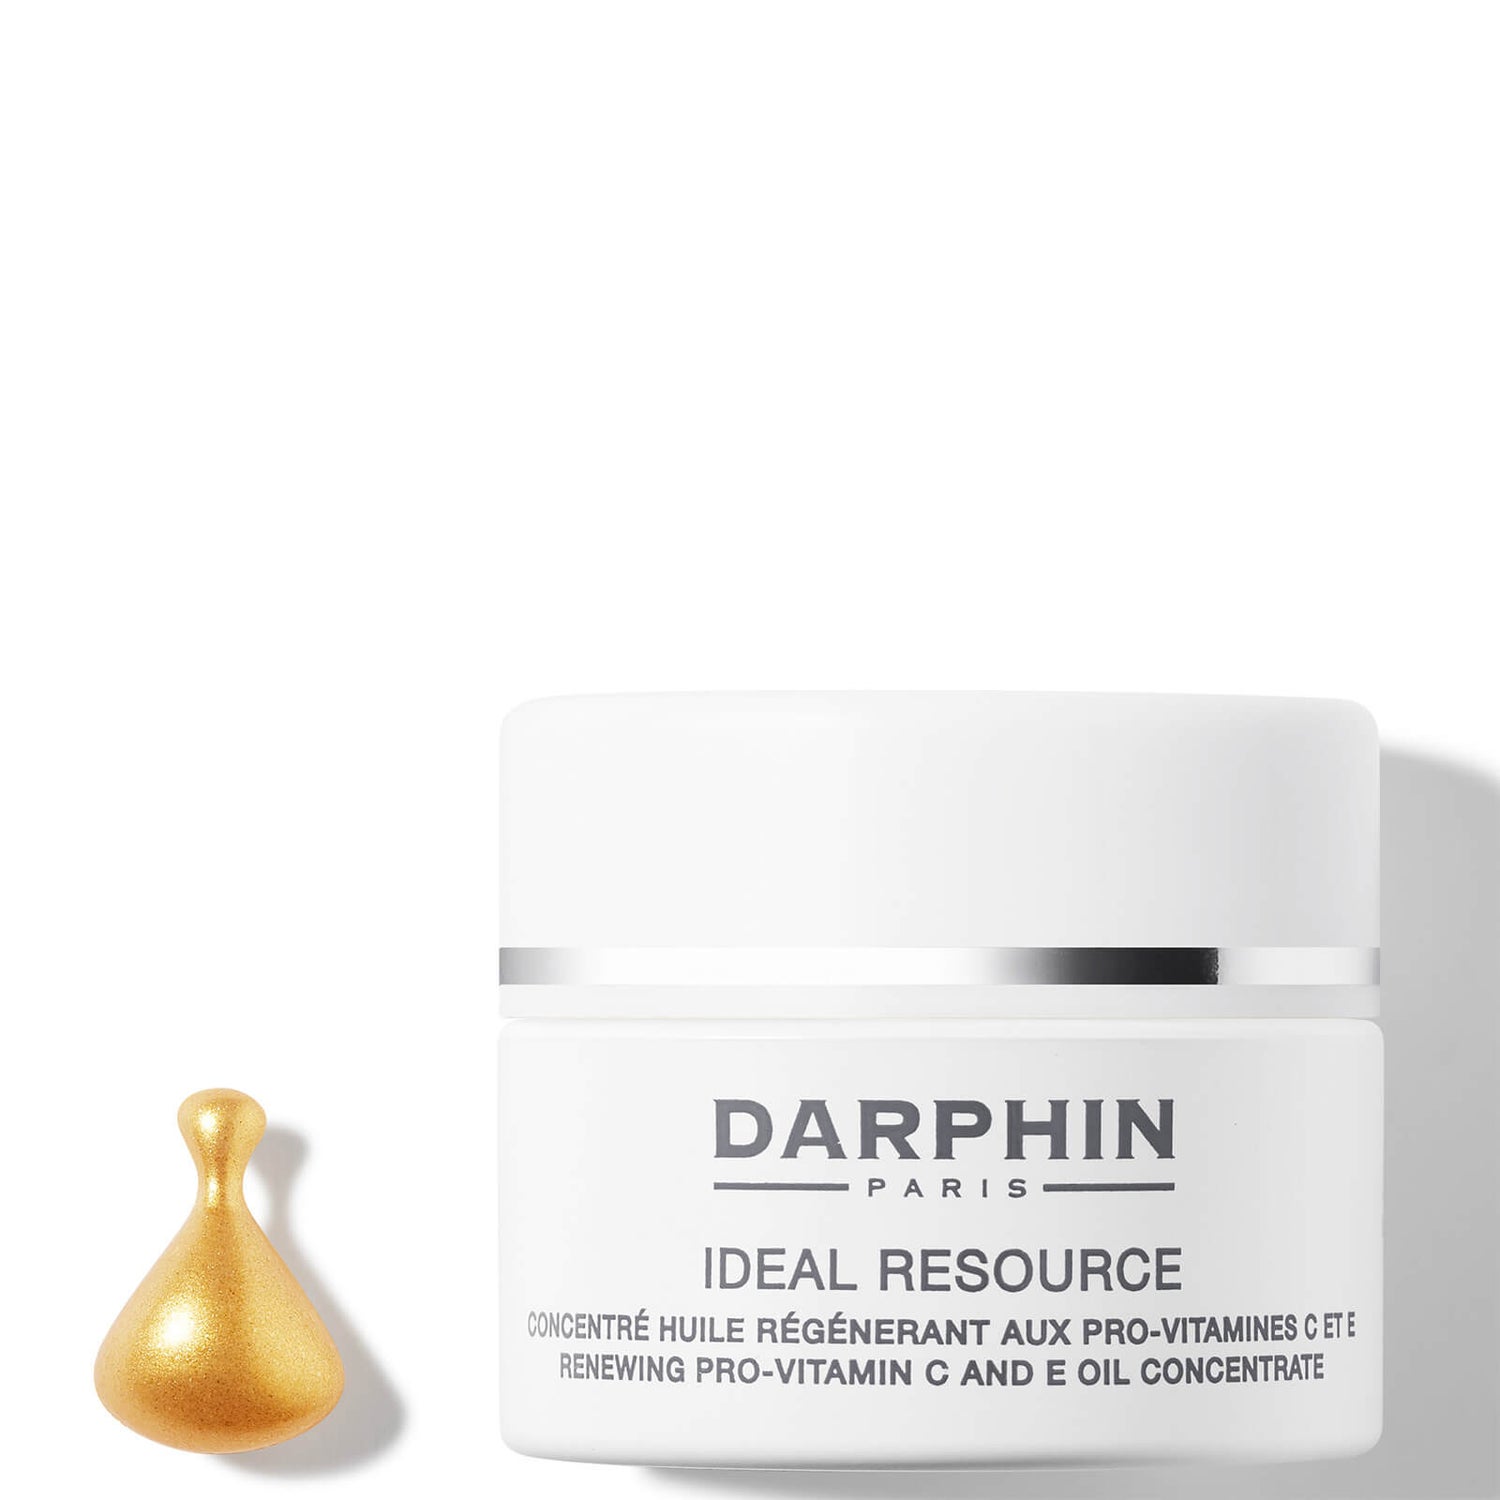 Darphin Mini Ideal Resource Renewing Pro-Vitamin C and E Oil Concentrate 15ml